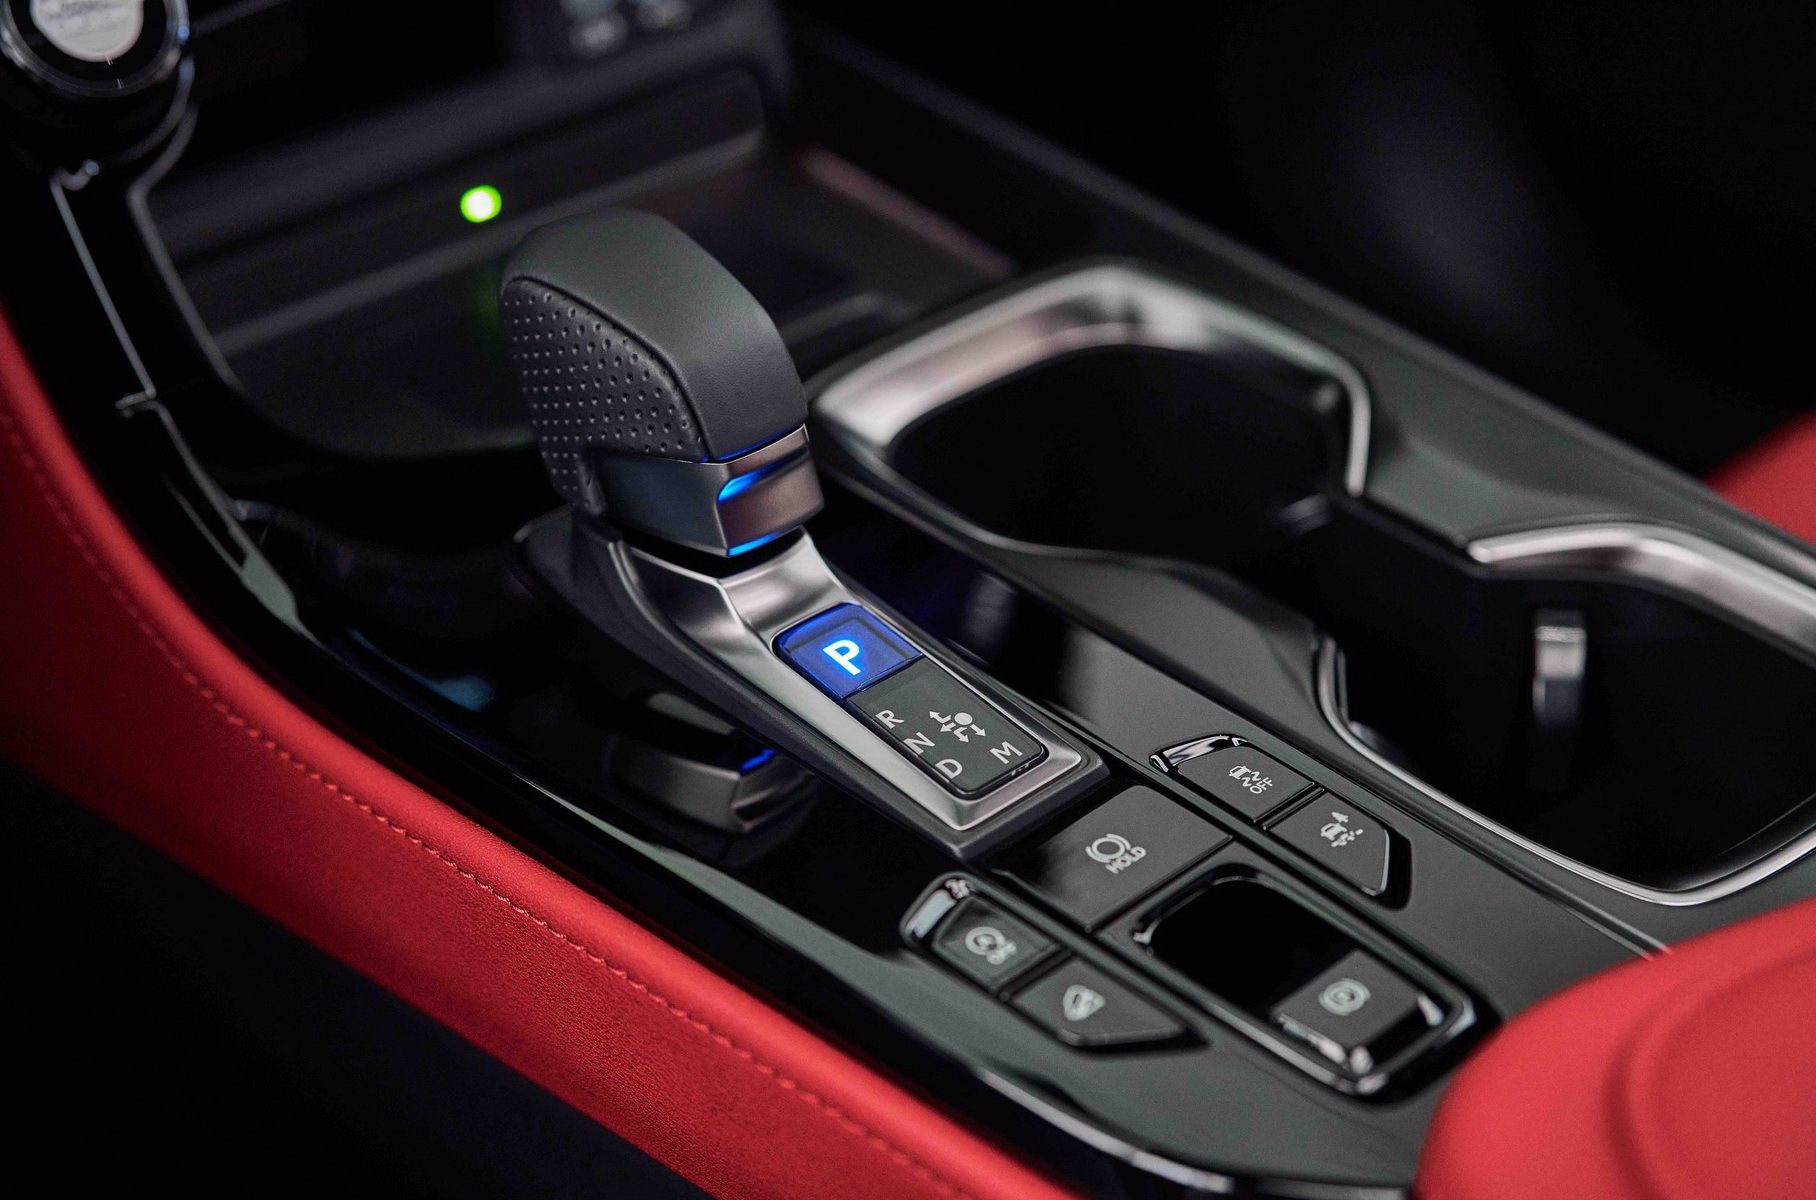 Новый Lexus NX обзавелся турбомотором 2.4 и отличился дизайном интерьера